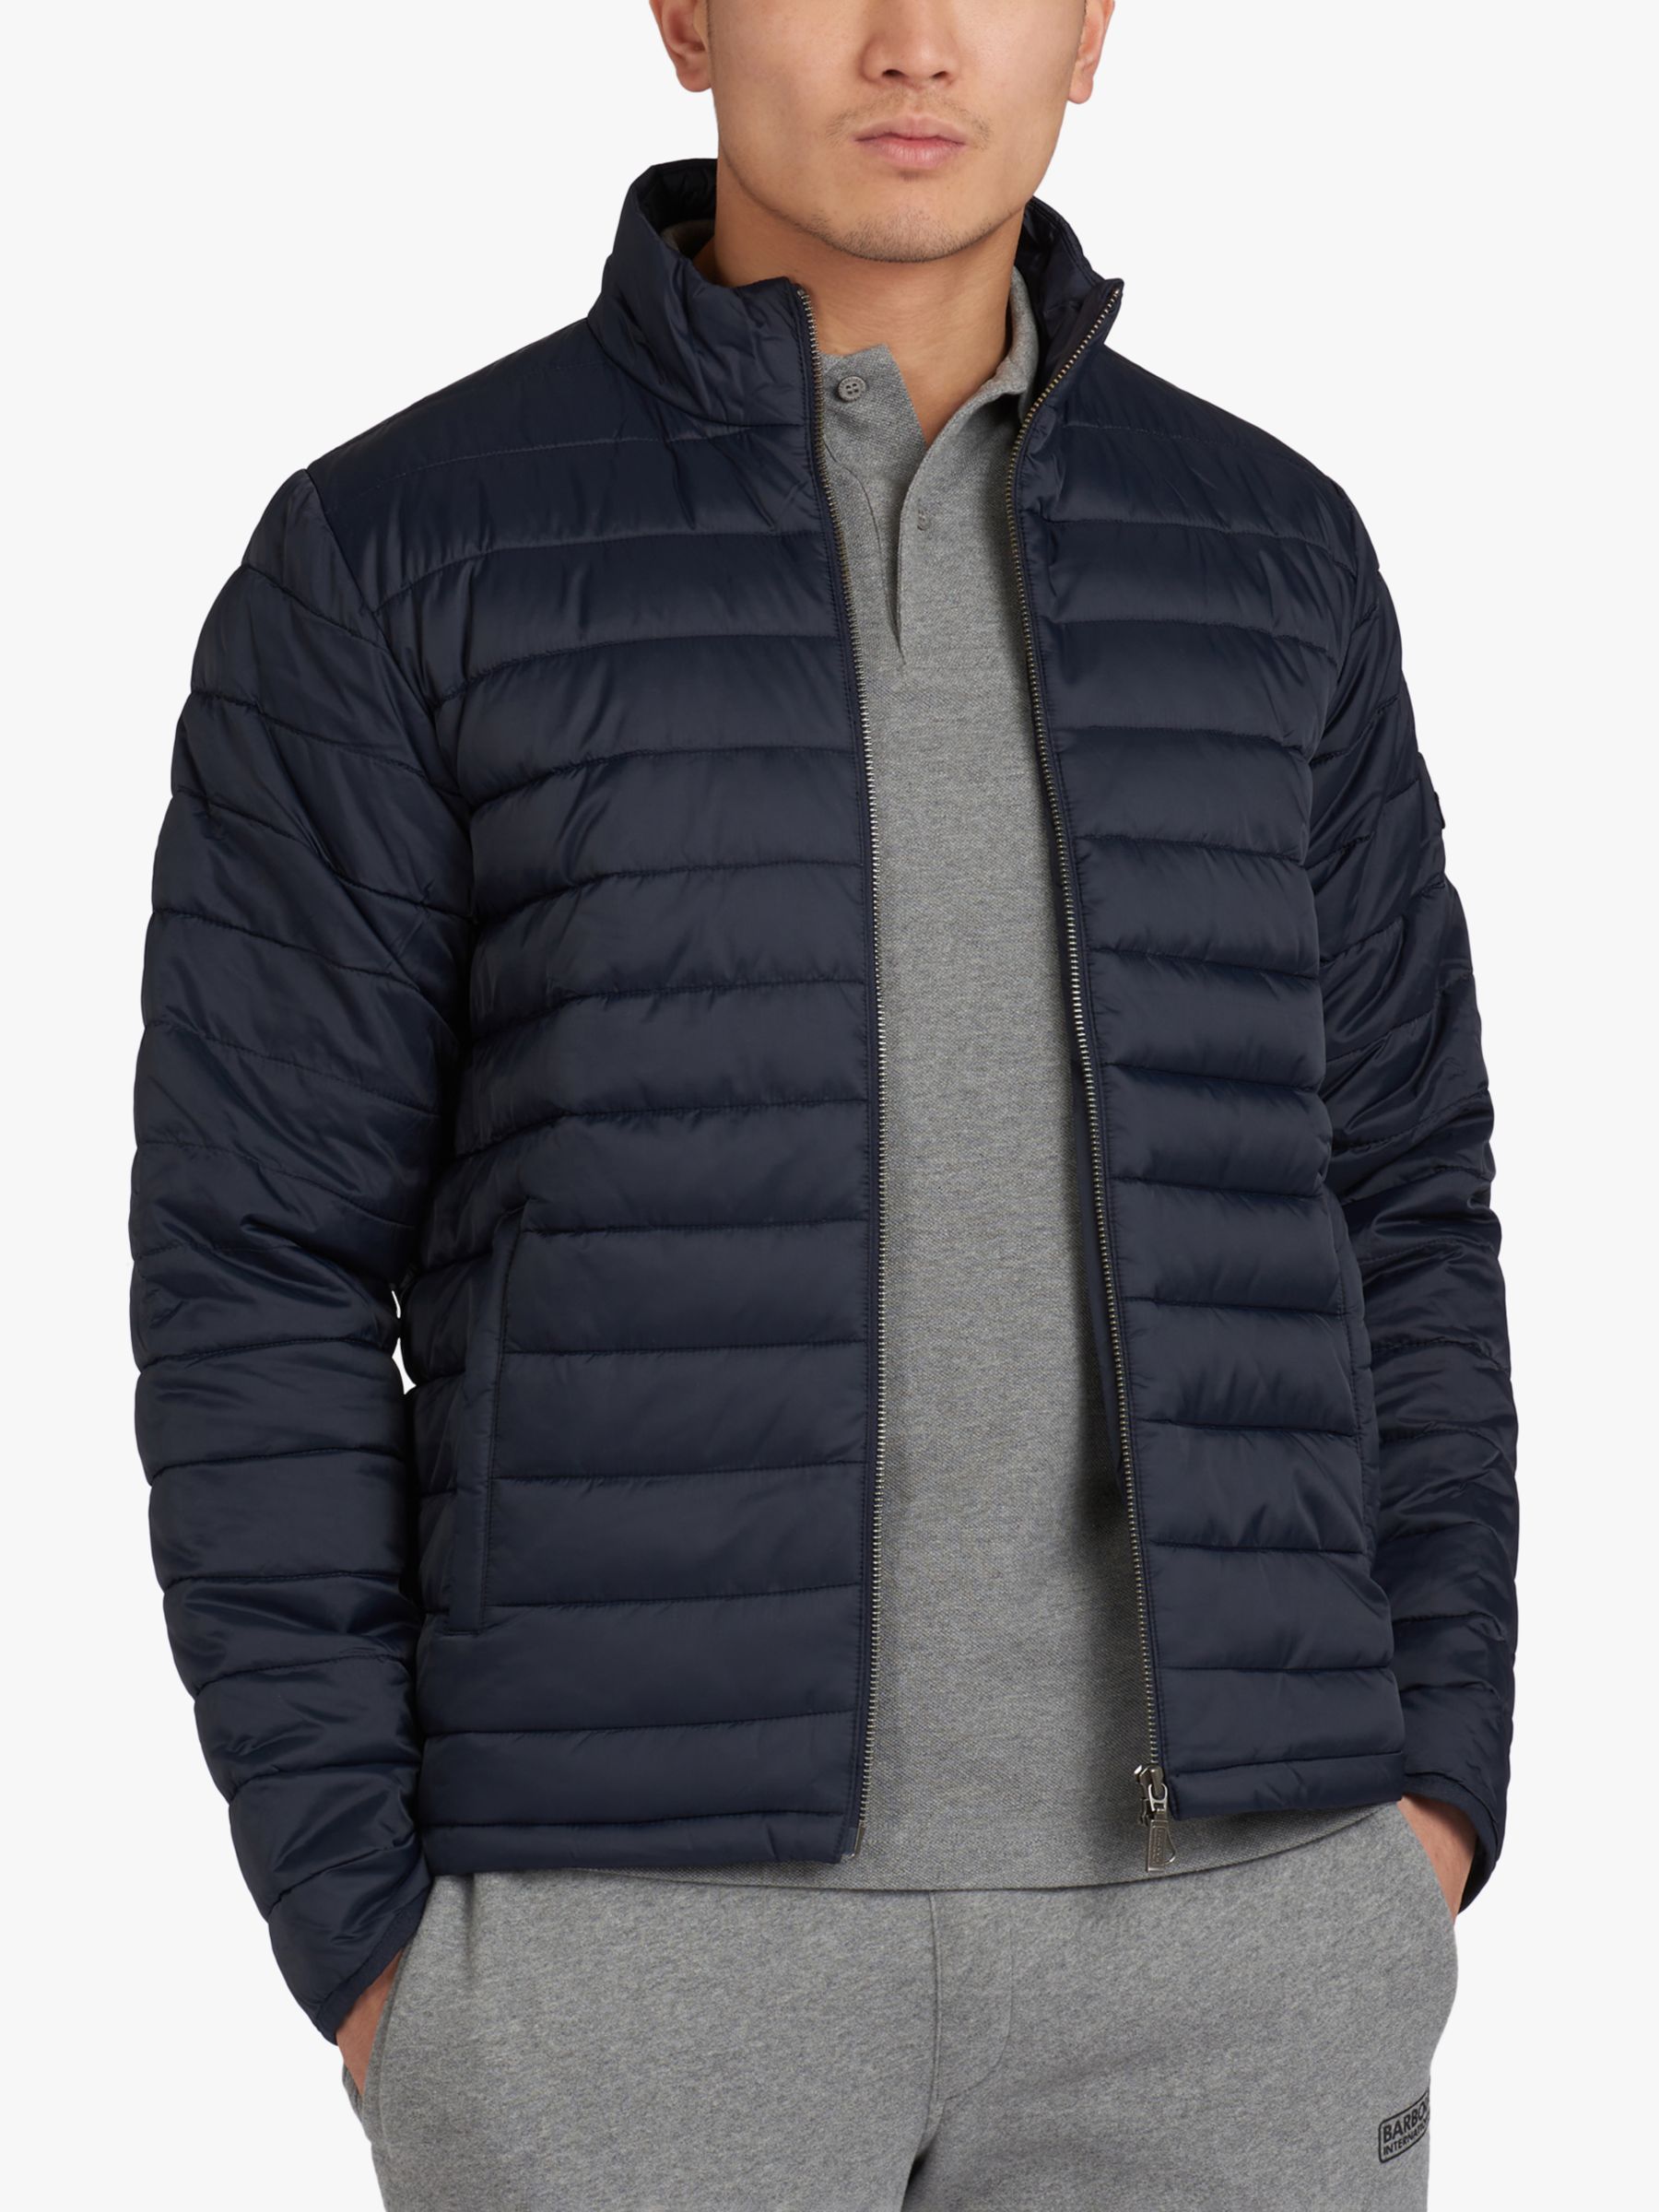 barbour international impeller jacket